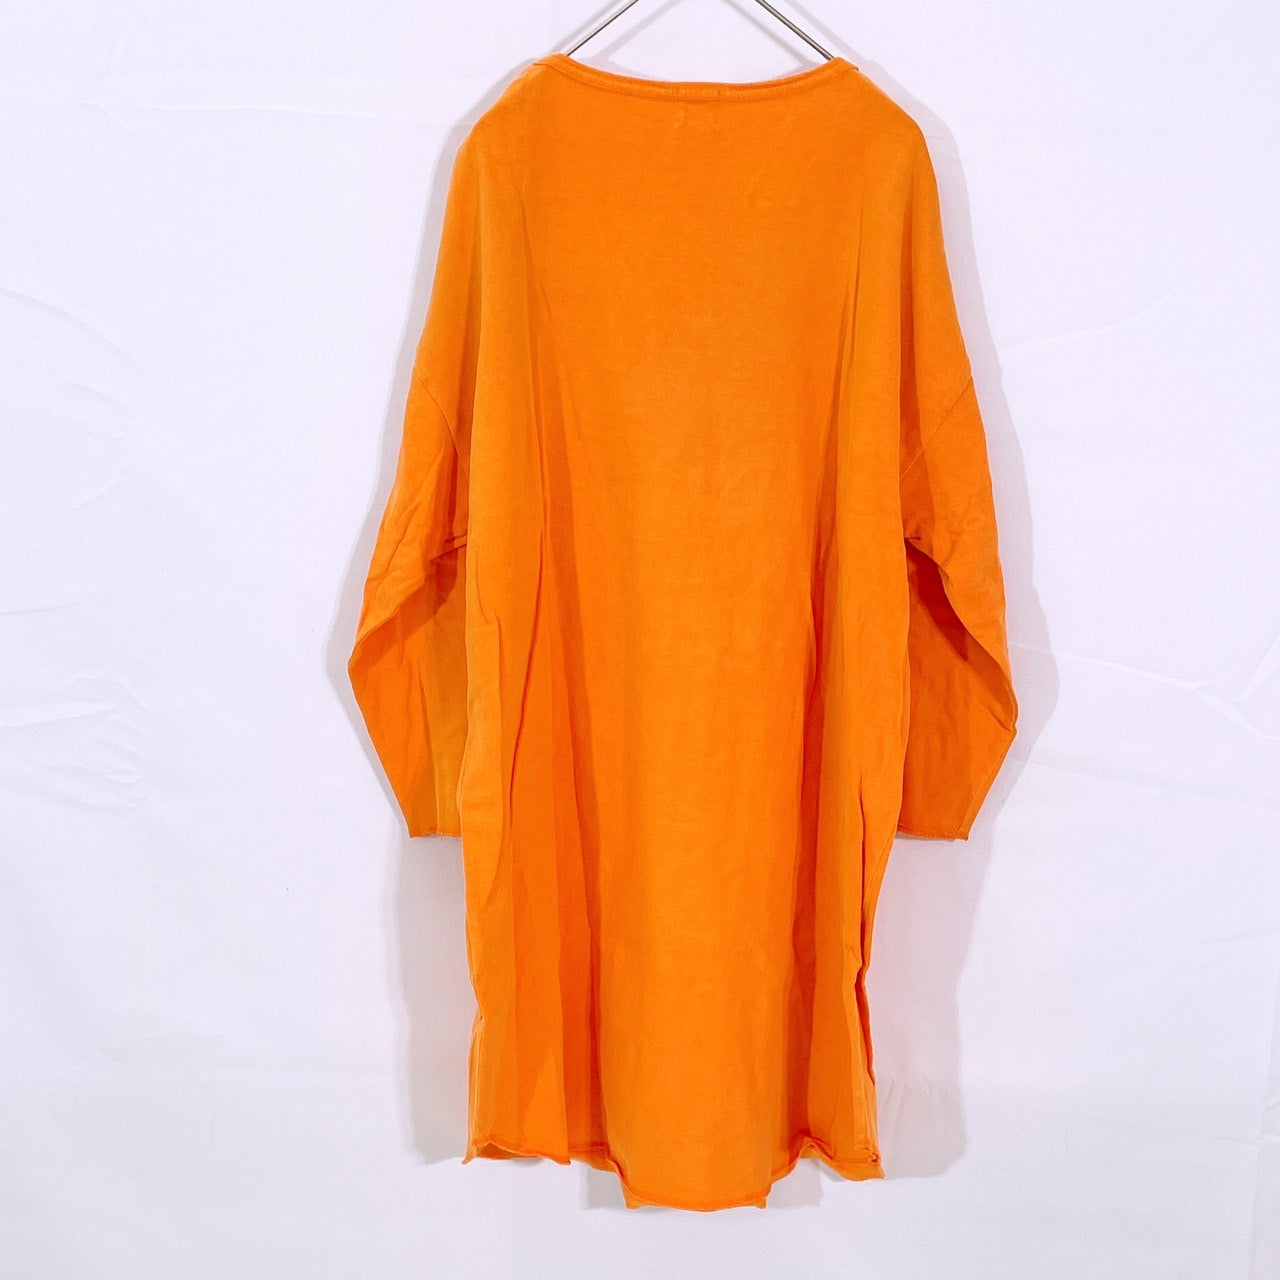 【25877】 BROWNY ブラウニー 長袖Tシャツ サイズL オレンジ カジュアルシャツ 丸ネック ビックシルエット シンプル ゆったり メンズ